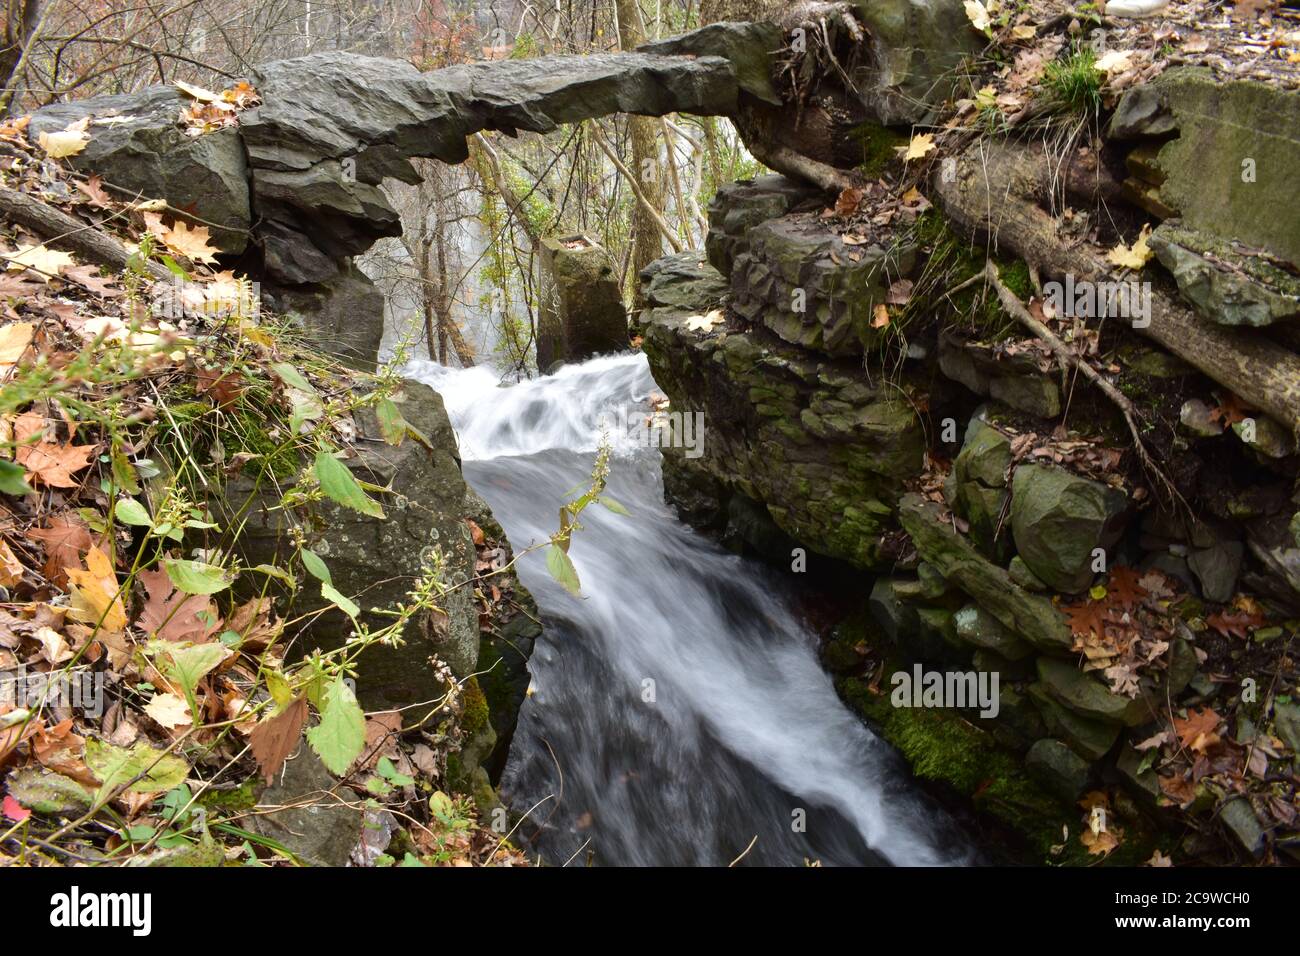 Una lunga esposizione di acqua in rapido movimento che scorre sotto un arco di pietra naturale su una scogliera Foto Stock